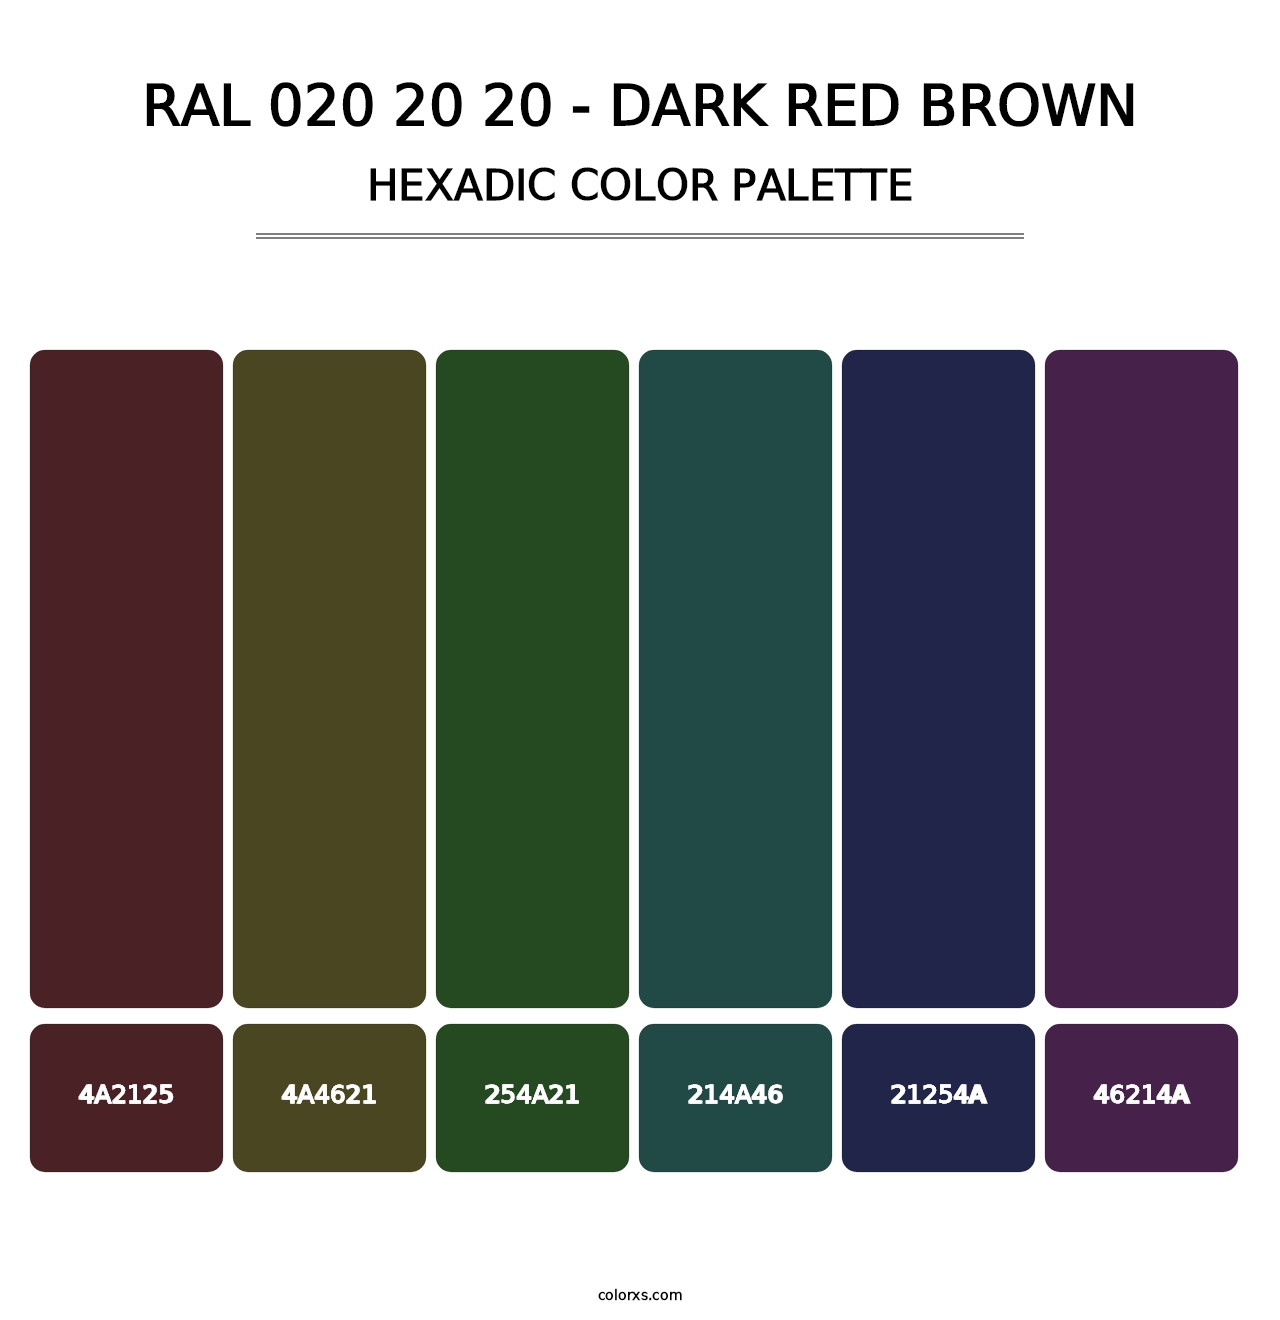 RAL 020 20 20 - Dark Red Brown - Hexadic Color Palette